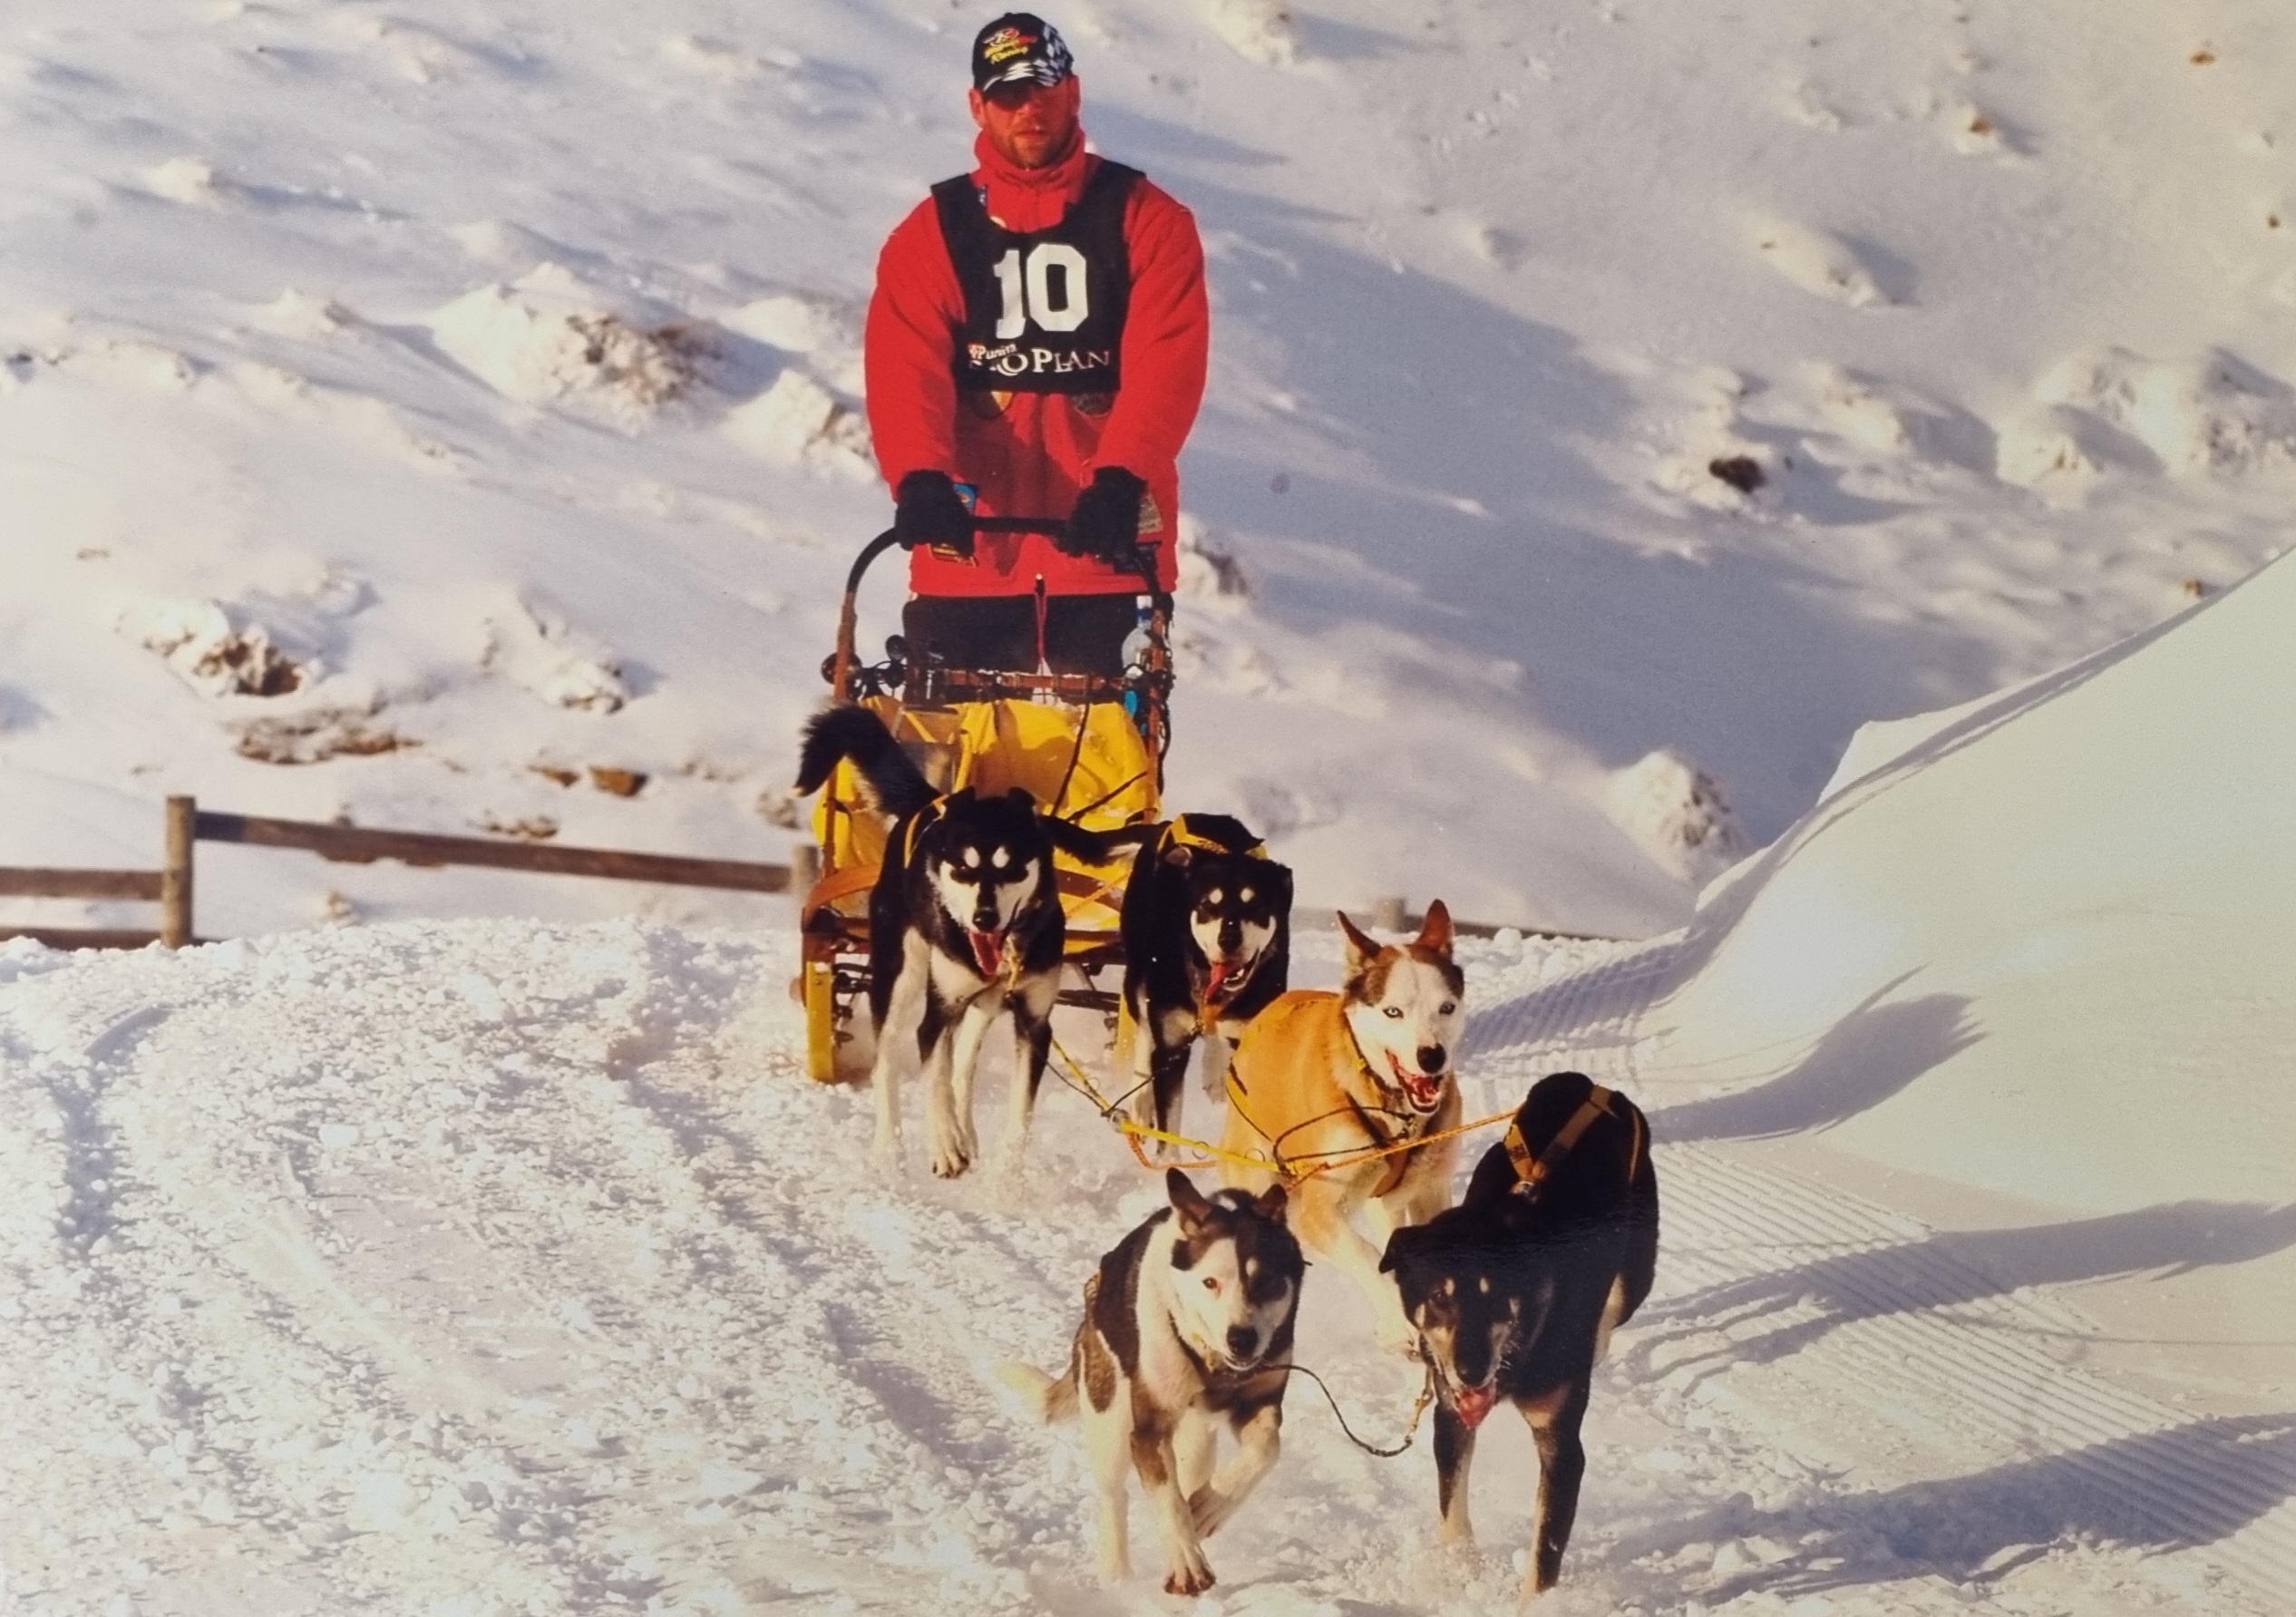 KJet Queenstown mechanic Tony Turner sled dogs